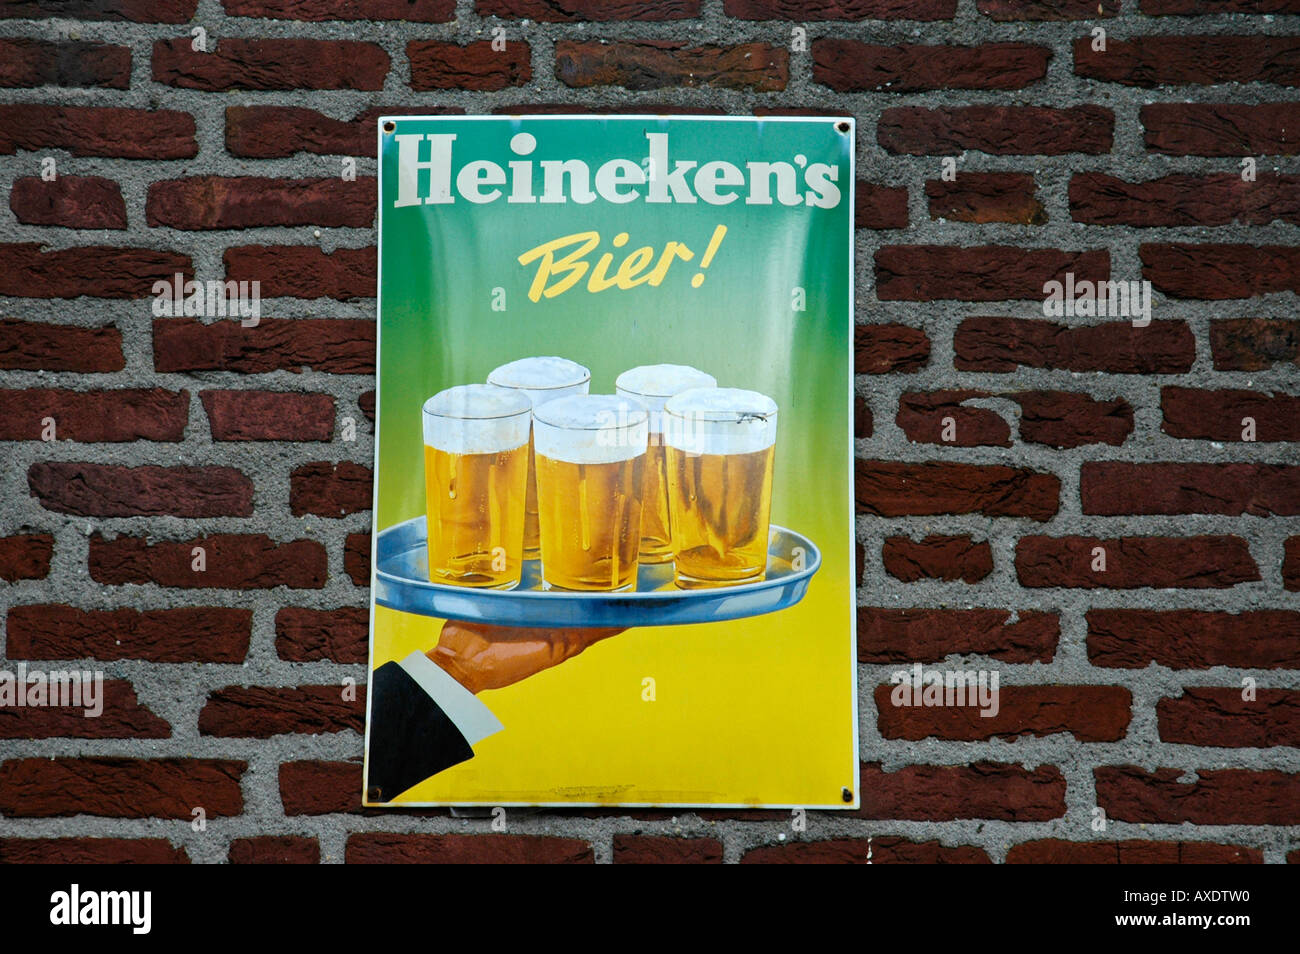 Advertisement, Heineken's Beer, Netherlands Stock Photo